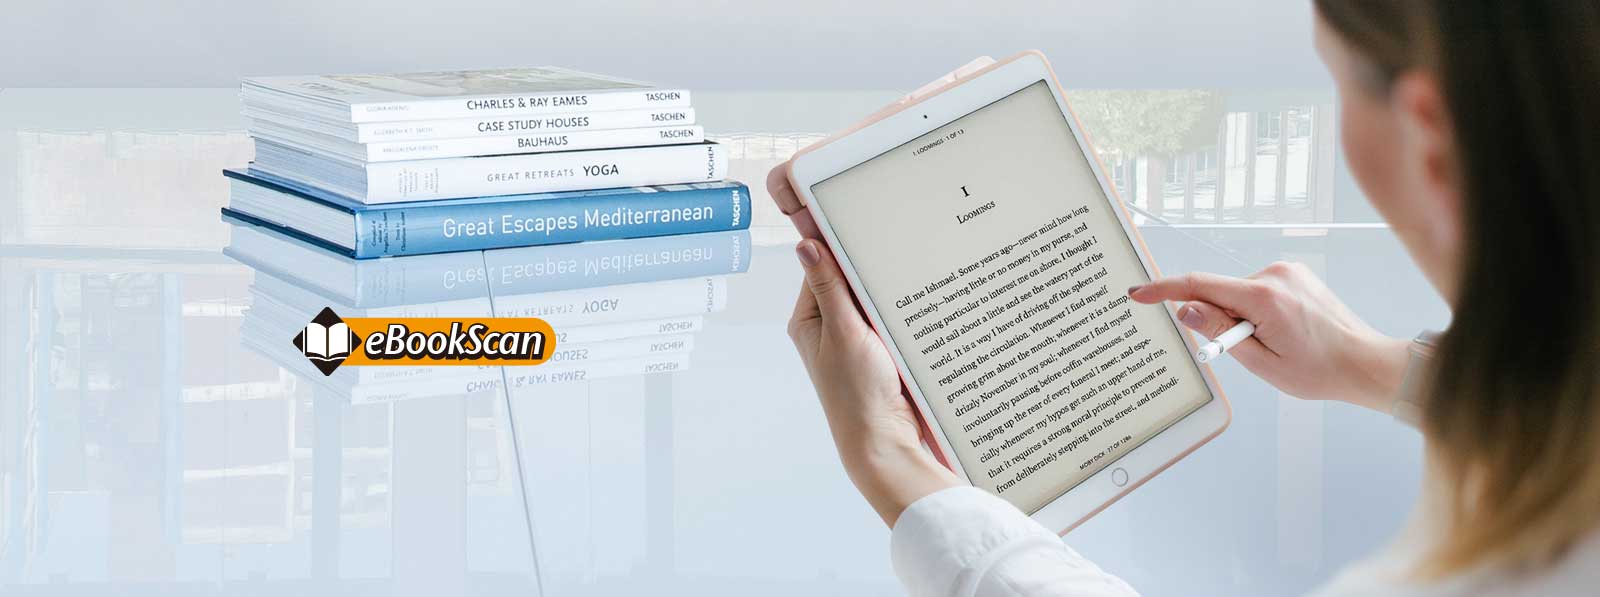 Mit eBookScan können Sie im Handumdrehen Ihre eigenen eBooks erstellen und in entsprechende Dateiformate speichern. 